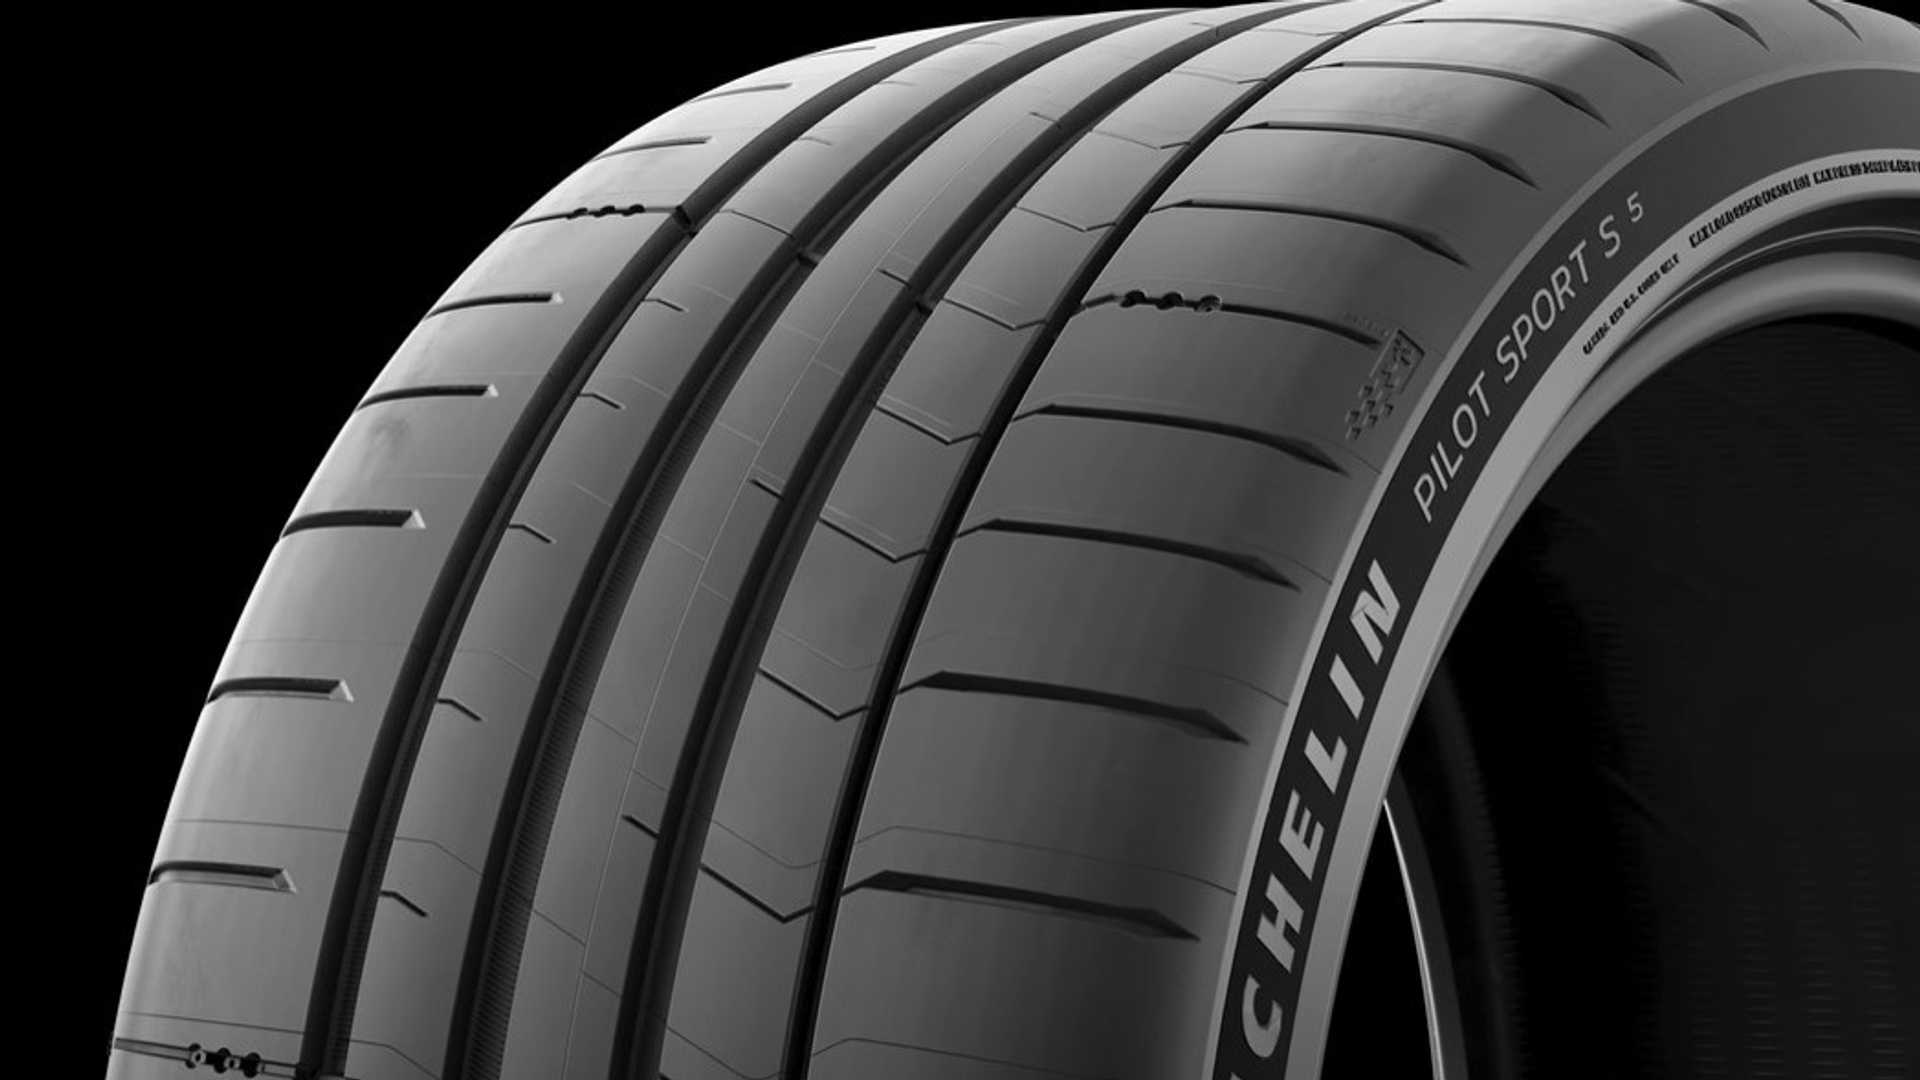 Video tìm hiểu sâu về Michelin Pilot Sport S 5 giải thích các cải tiến, tên mới